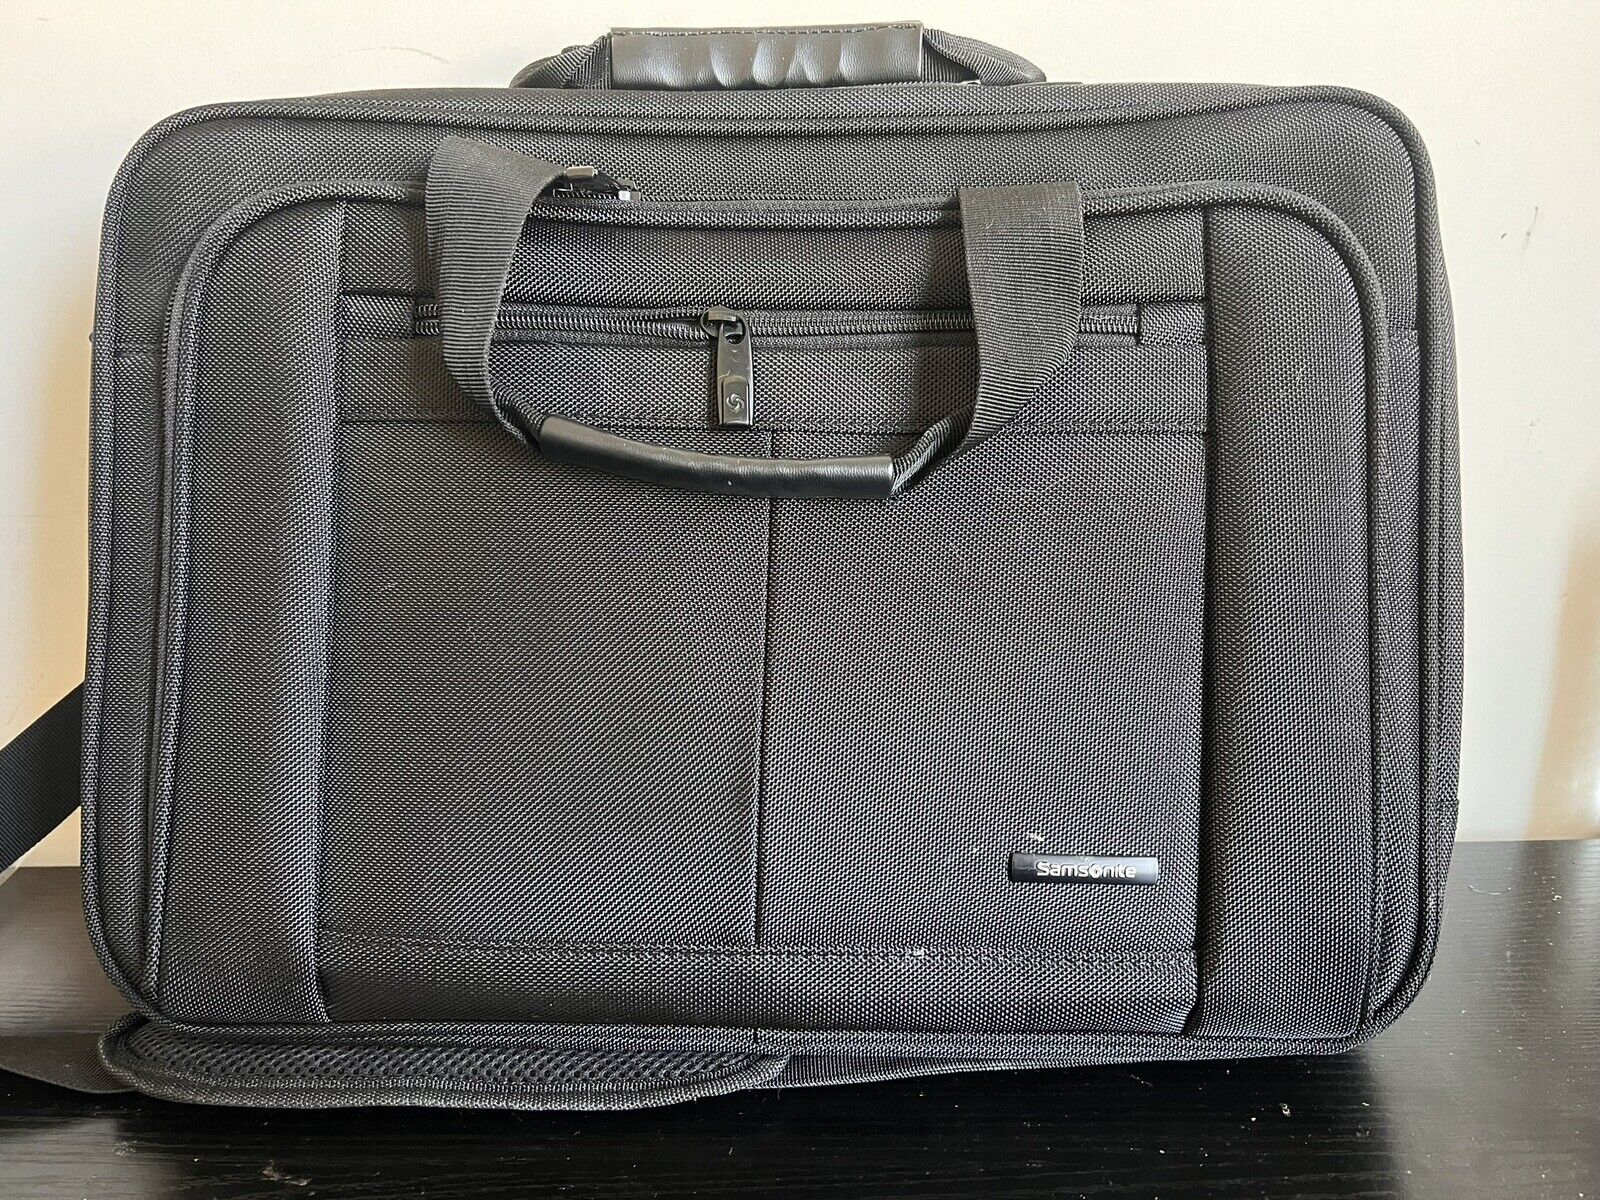 Samsonite Classic Black Multi-Pocket Business Travel Laptop Bag w/Shoulder Strap